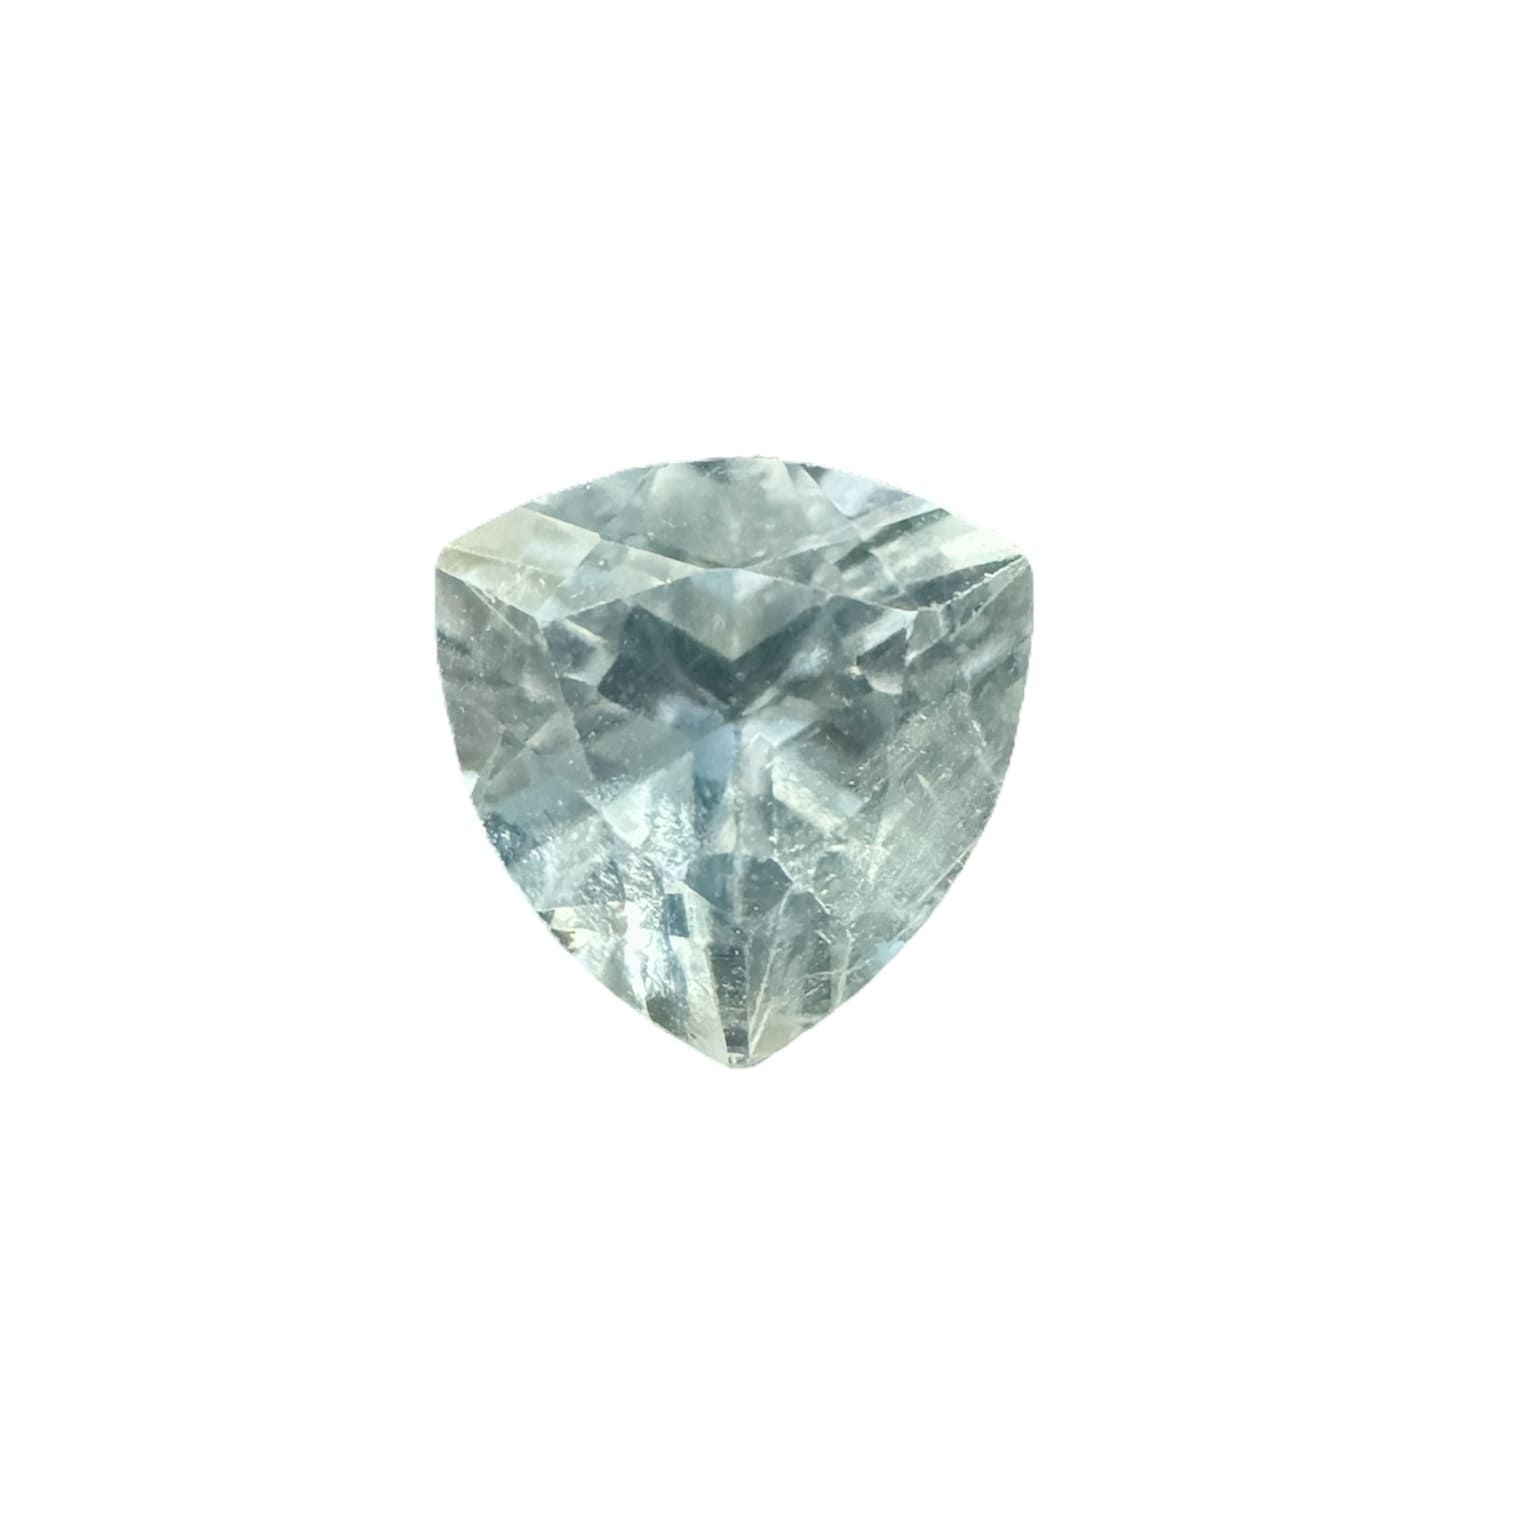 goshénite pierre gemme béryl incolore